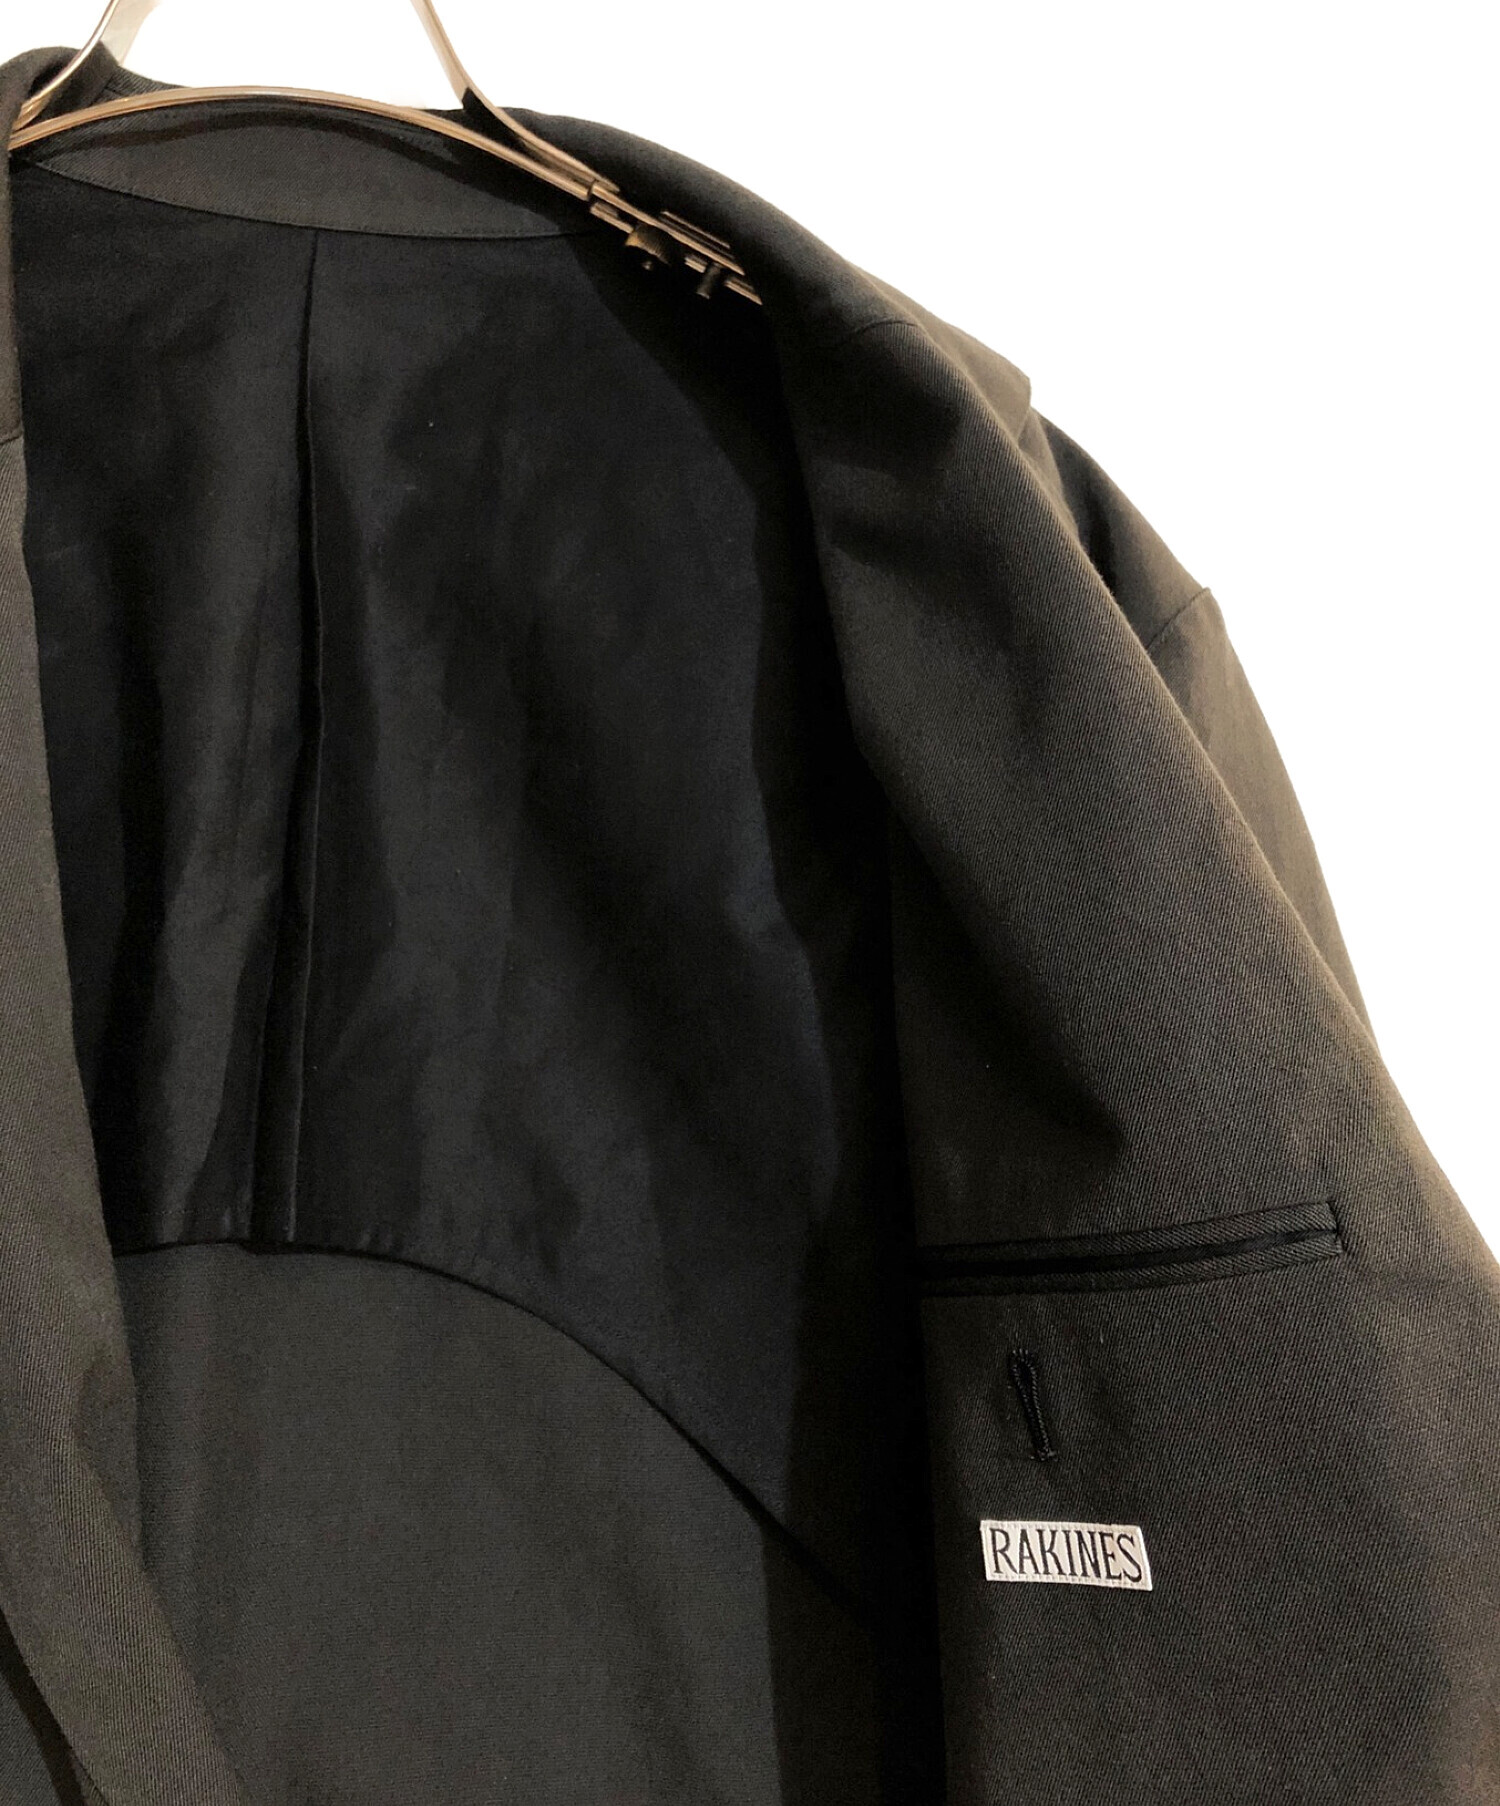 RAKINES (ラキネス) Post-work Twill / Days jacket ブラック サイズ:2 未使用品